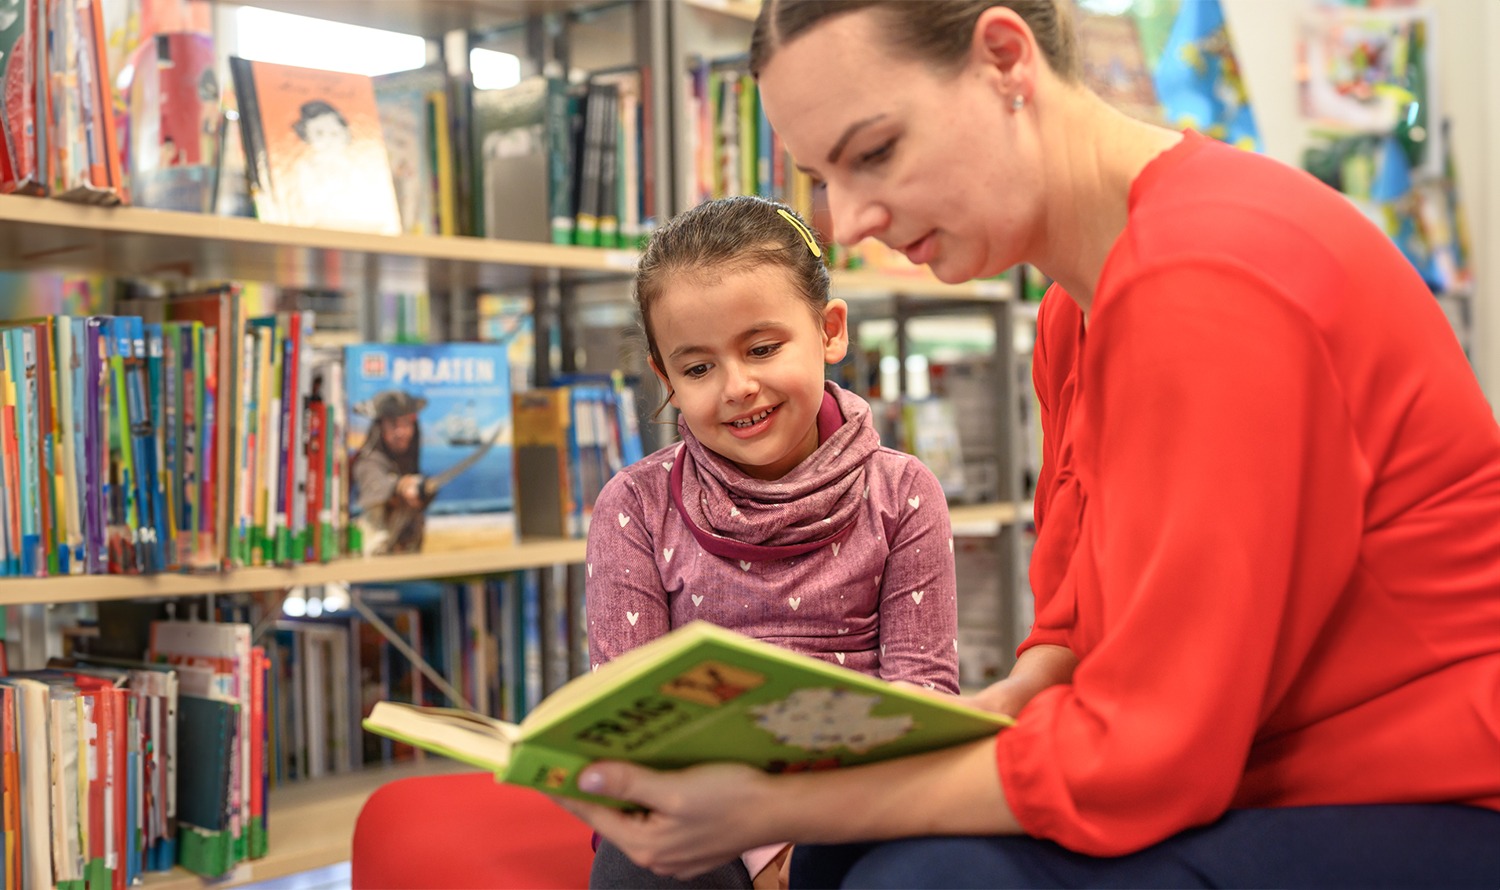 Eine Frau liest einem jungen Mädchen in einer Bibliothek ein Buch vor, während beide lächeln.